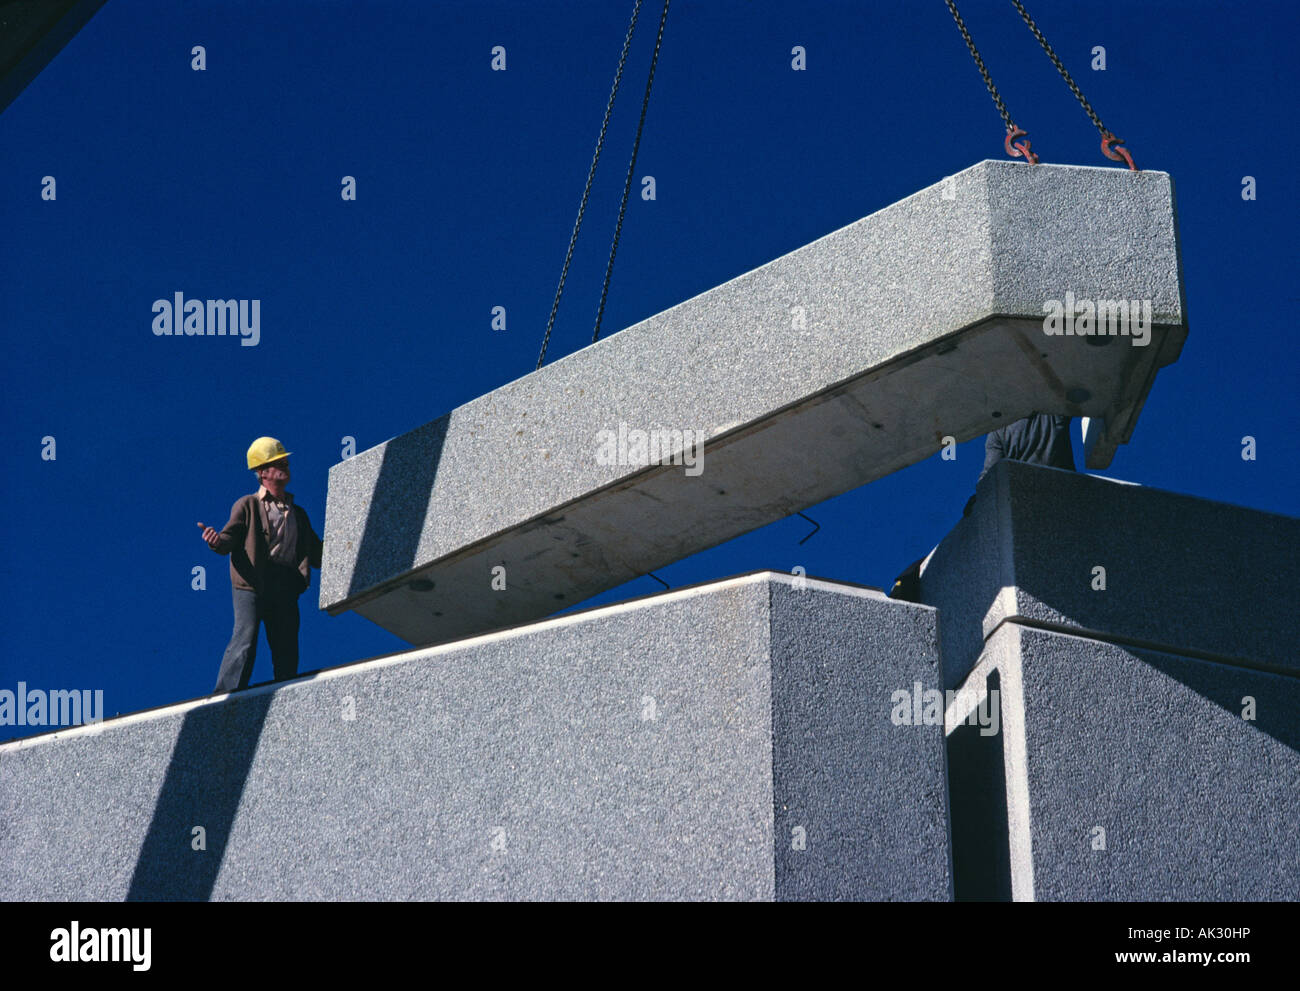 Bau Ingenieur guiding Kran Positionierung vorgefertigte Gebäude aus Beton Abschnitt. Stockfoto